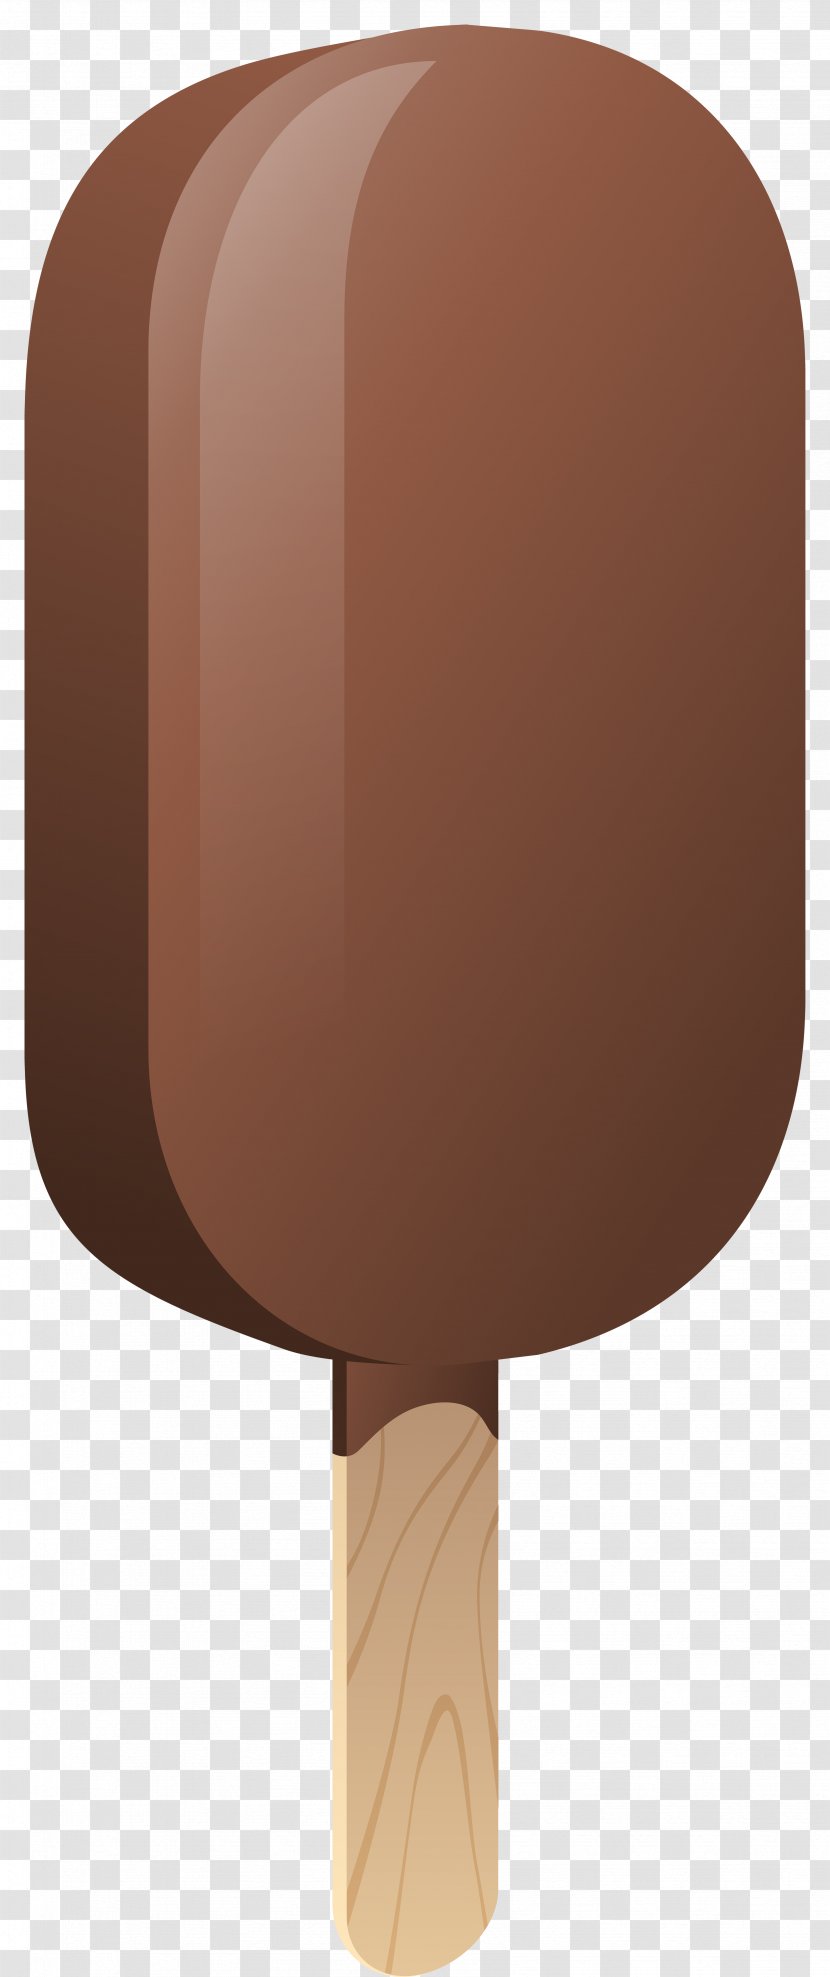 Chocolate Ice Cream Cones Clip Art - ICECREAM Transparent PNG